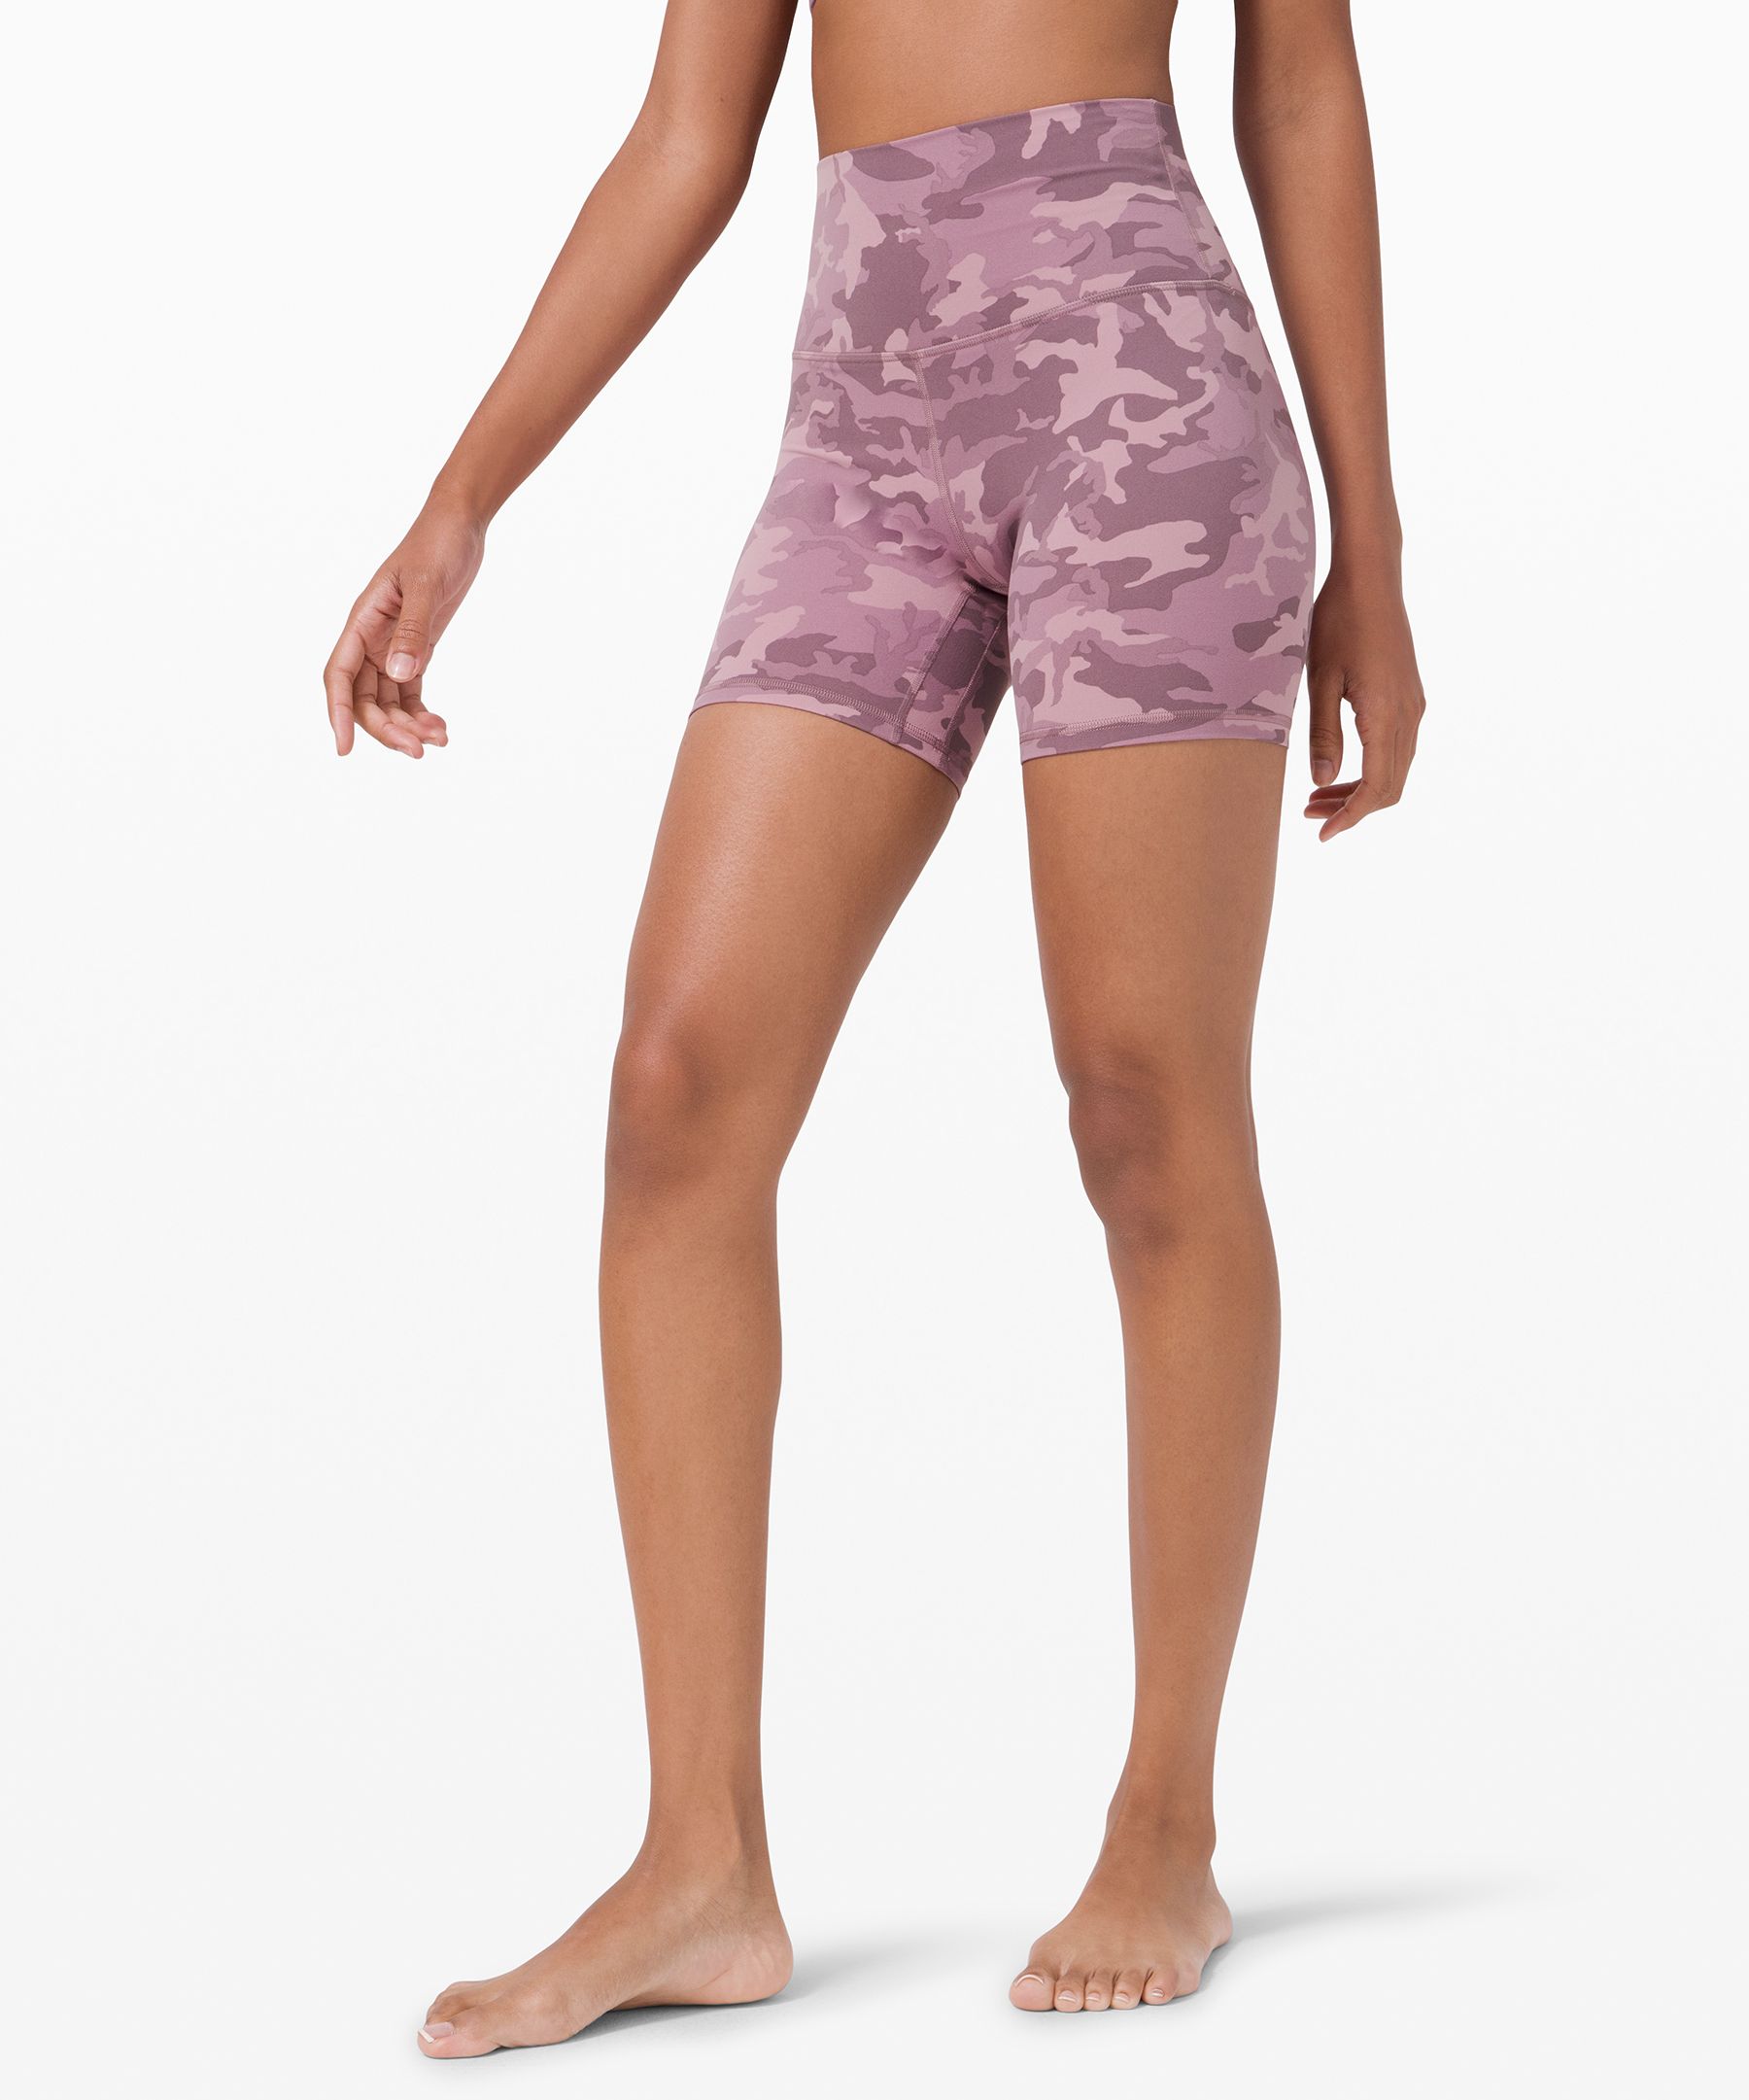 lululemon lavender shorts